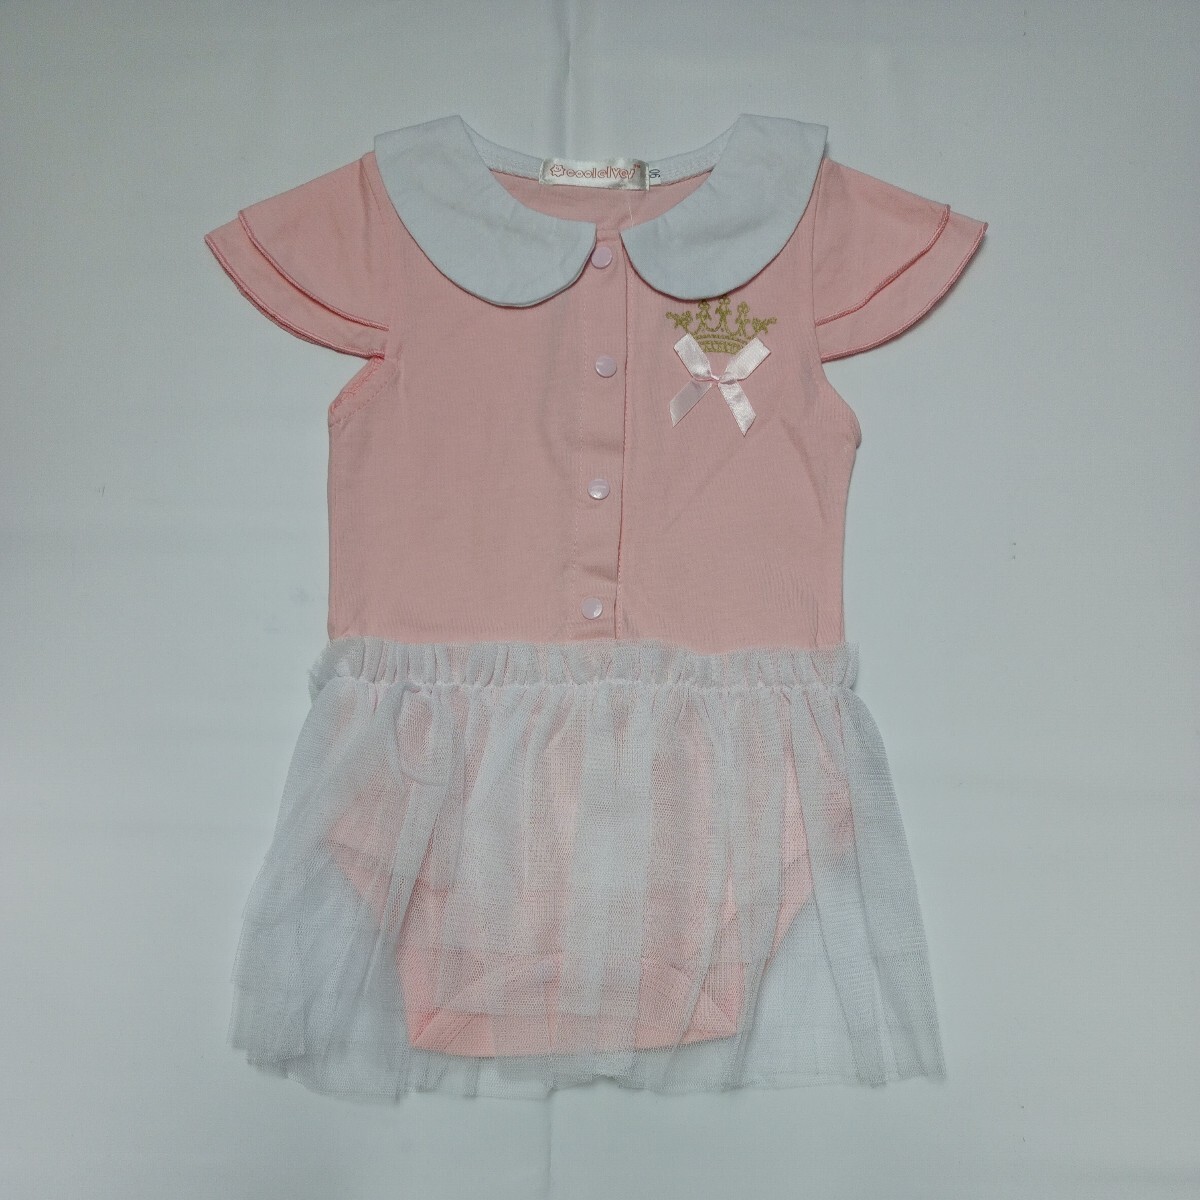 [90 размер ][ не использовался ] baby младенец девочка 90 детский комбинезон платье короткий рукав юбка способ оборка one отметка .. Crown ①